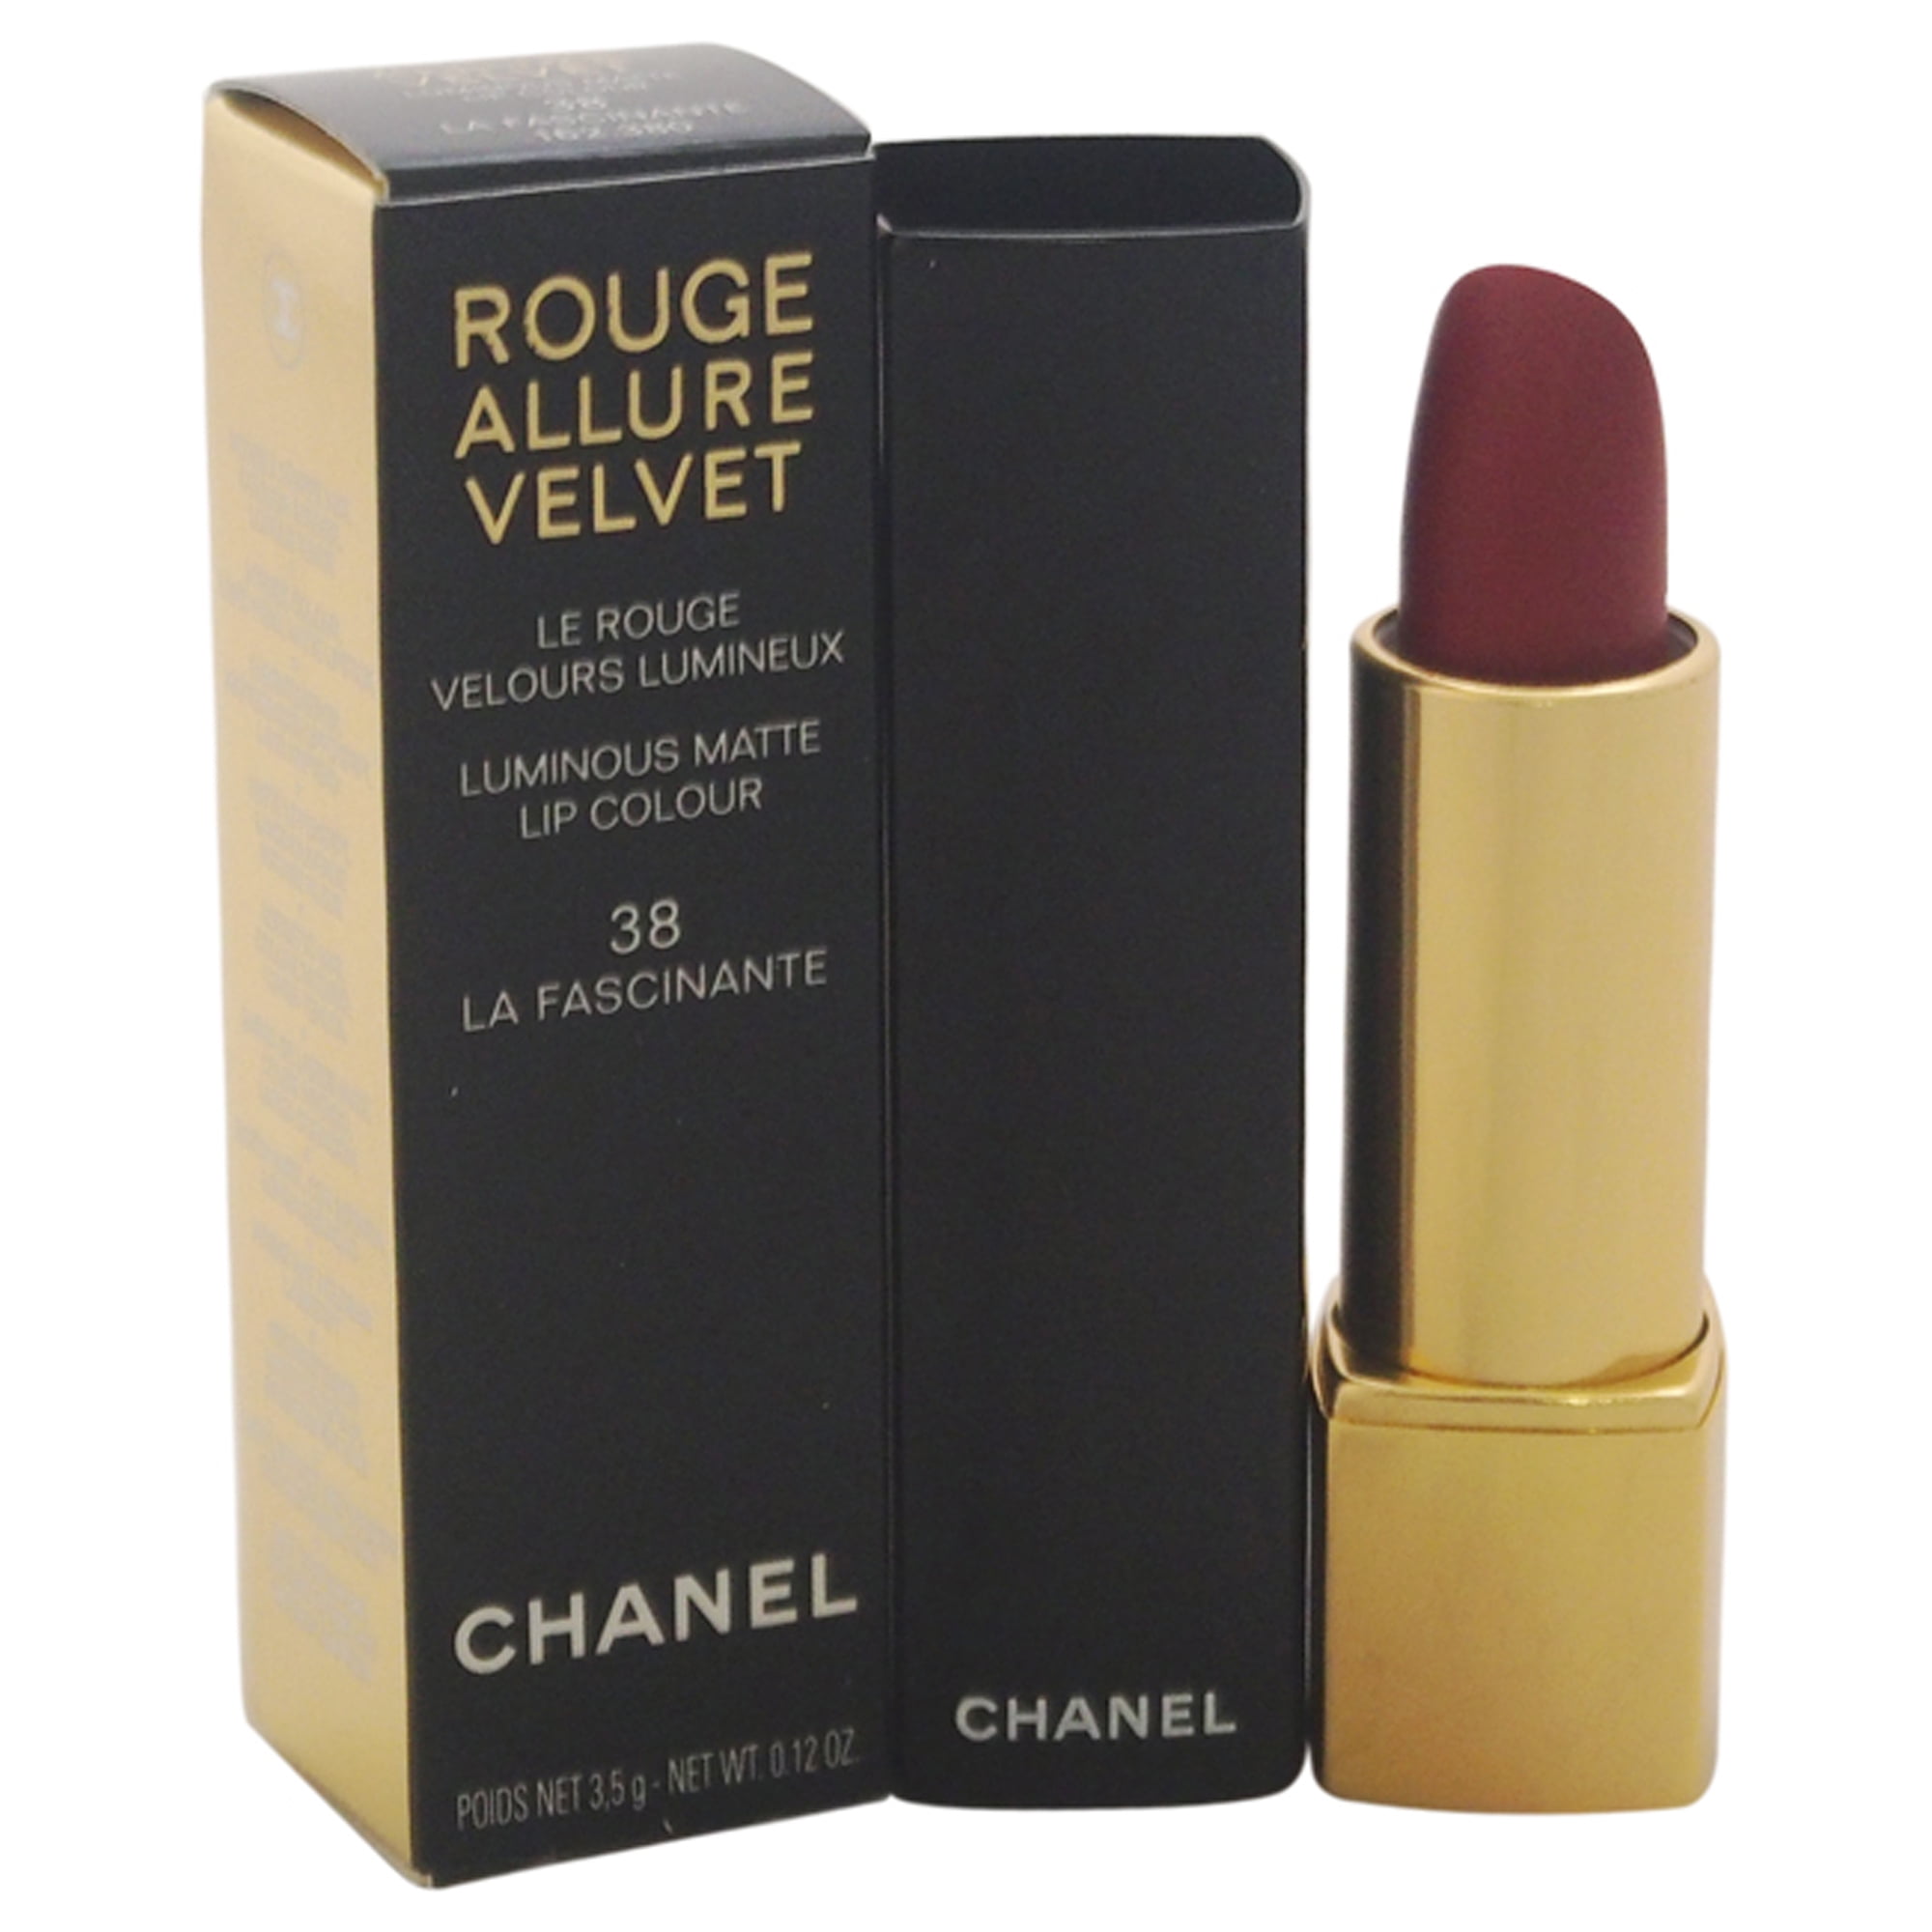 Rouge Allure Velvet Luminous Matte Lip Colour - 38 La fascinante by Chanel  for Women - 0.12 oz Lipst